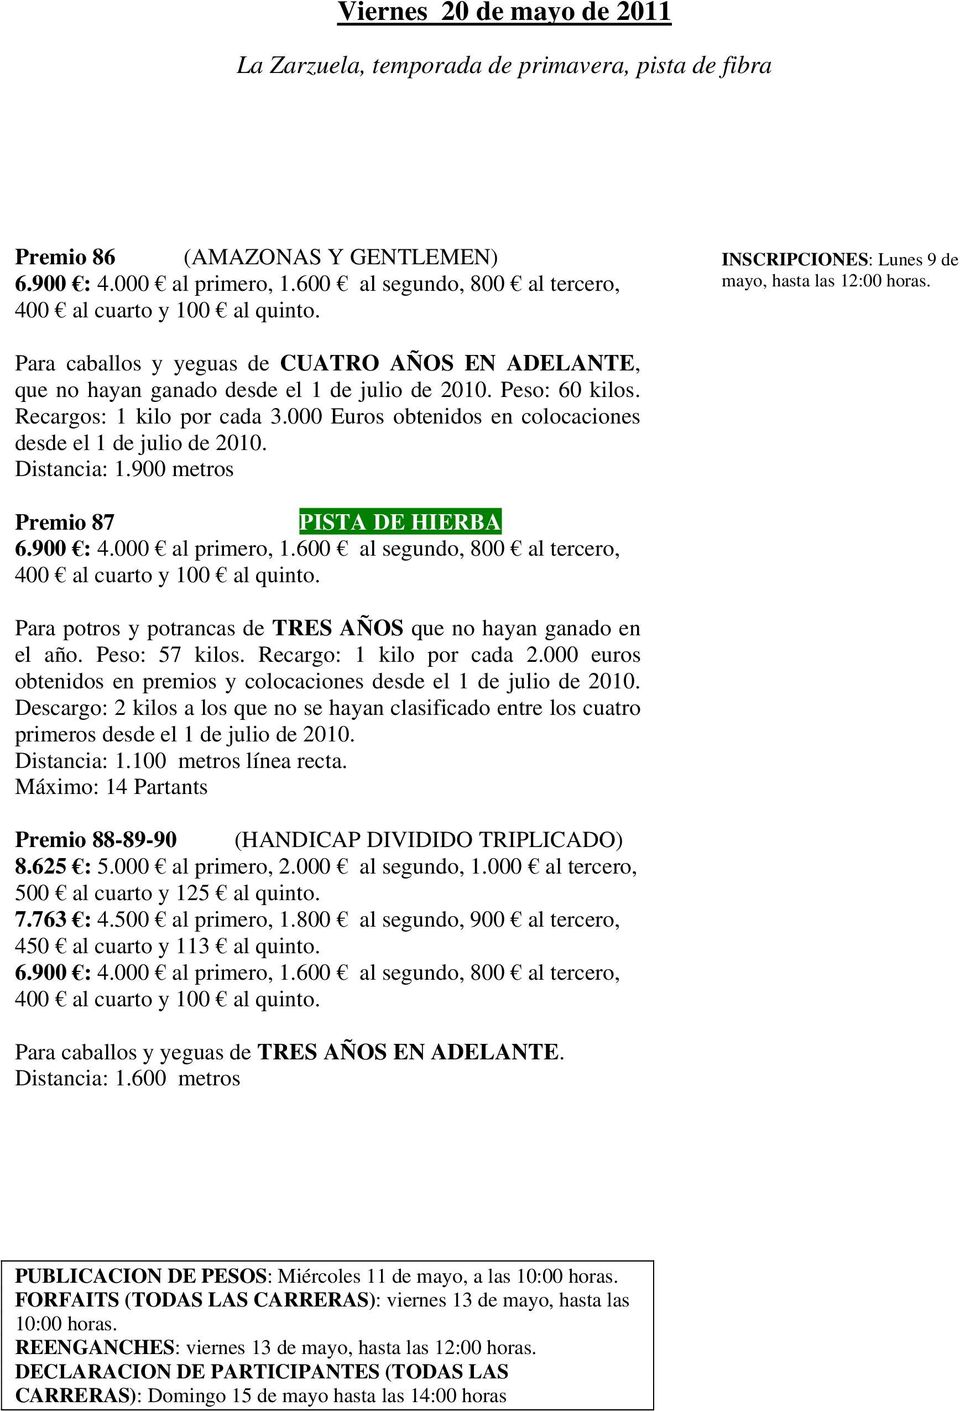 Para caballos y yeguas de CUATRO AÑOS EN ADELANTE, que no hayan ganado desde el 1 de julio de 2010. Peso: 60 kilos. Recargos: 1 kilo por cada 3.